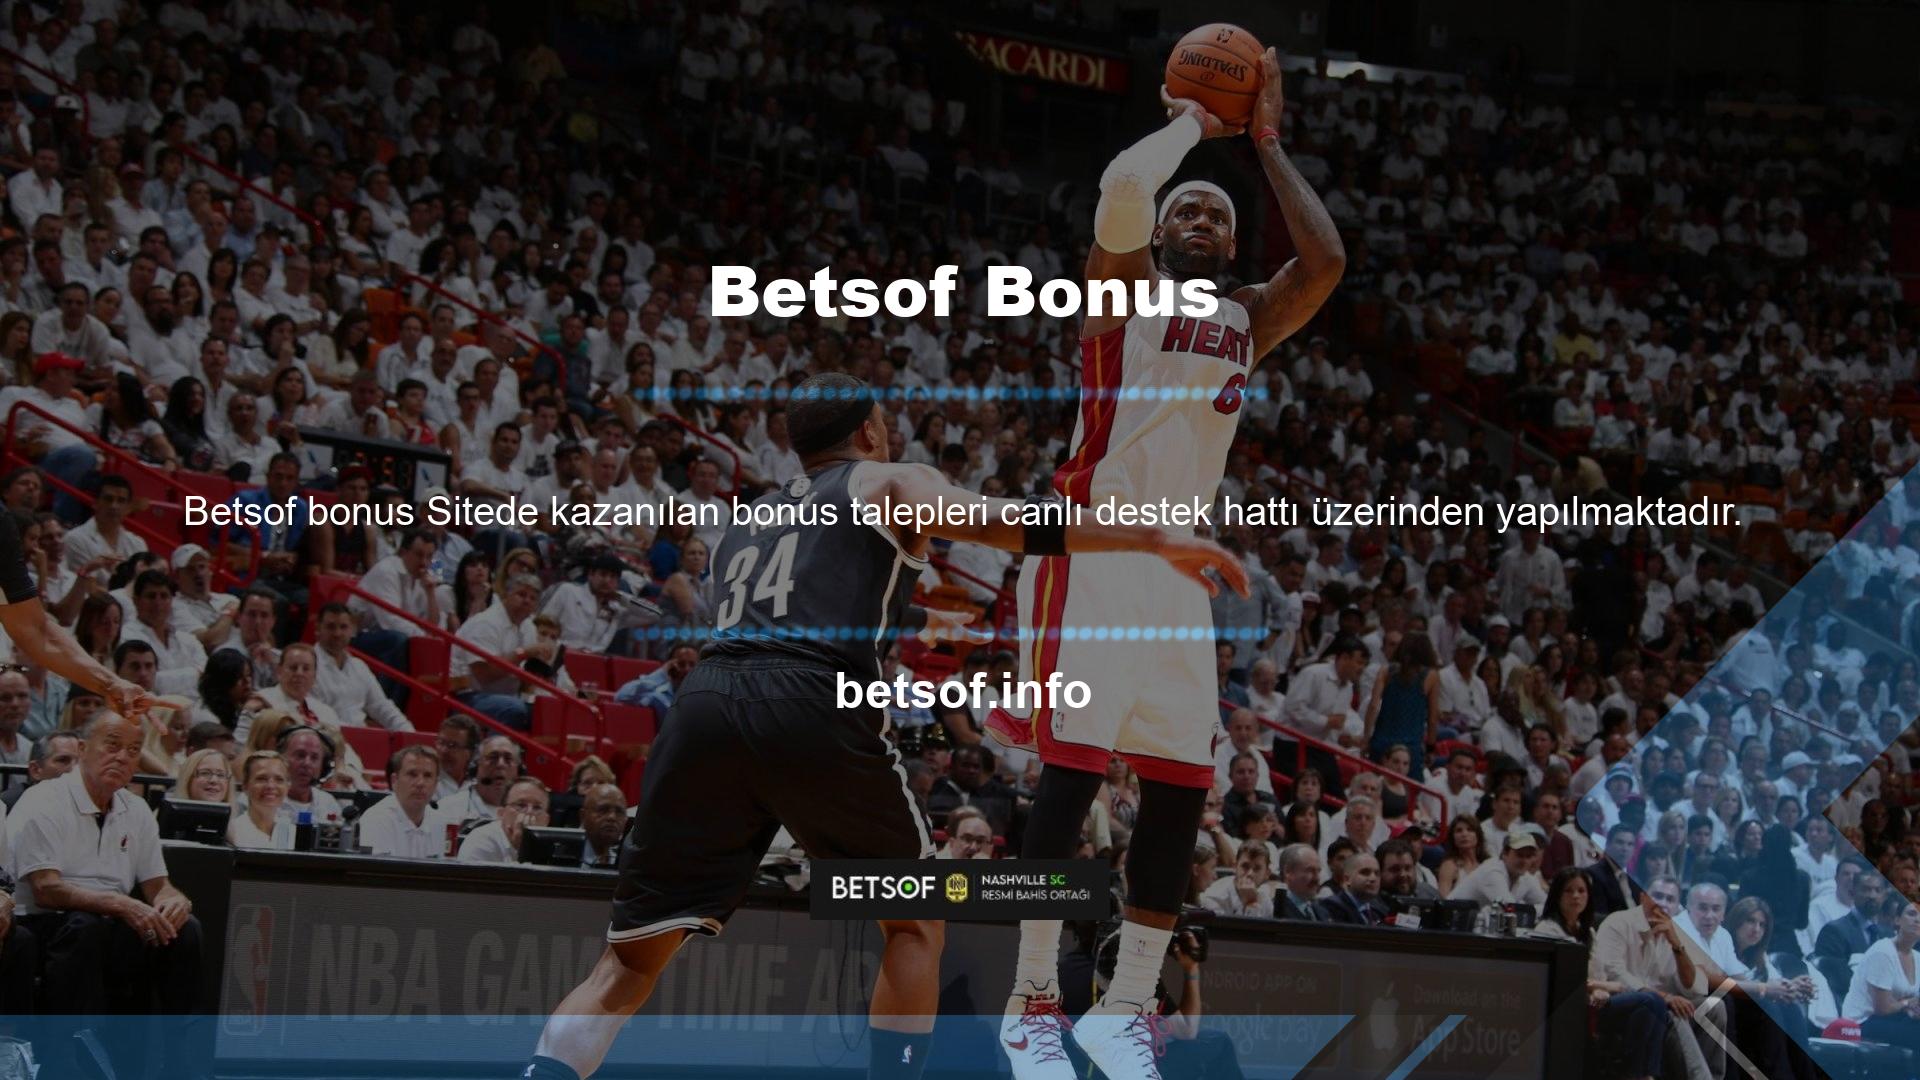 Para yatırma işlemi sonucunda bonus talep edilirse, oyunu oynamadan önce Betsof müşteri hizmetleri ile iletişime geçilerek bonus eklenebilir ancak yatırım bonusu verilmez